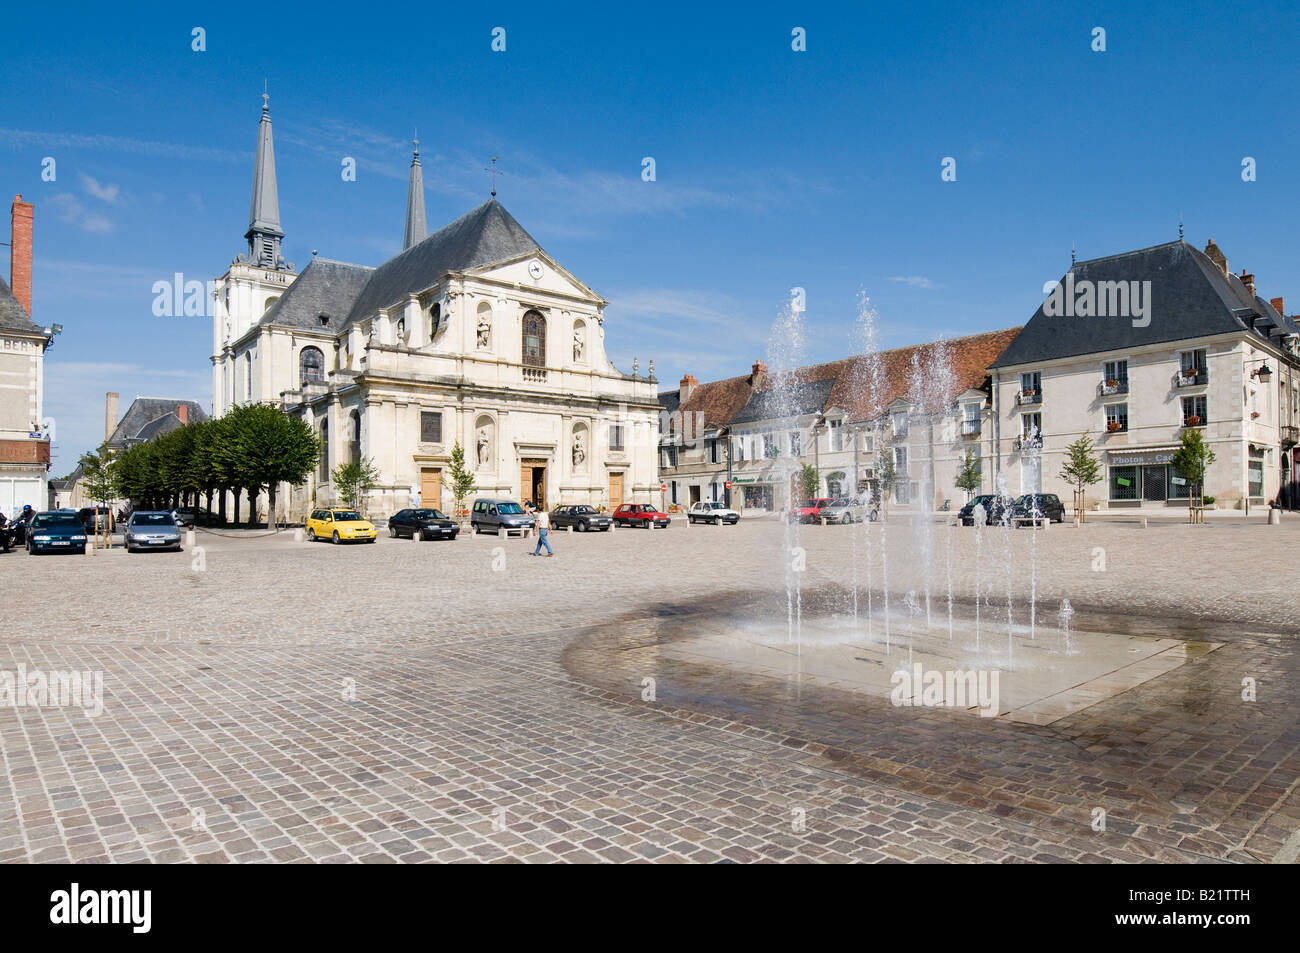 Town Square, fontane e la chiesa di Notre Dame de l'Assomption, Richelieu, Indre-et-Loire, Francia. Foto Stock